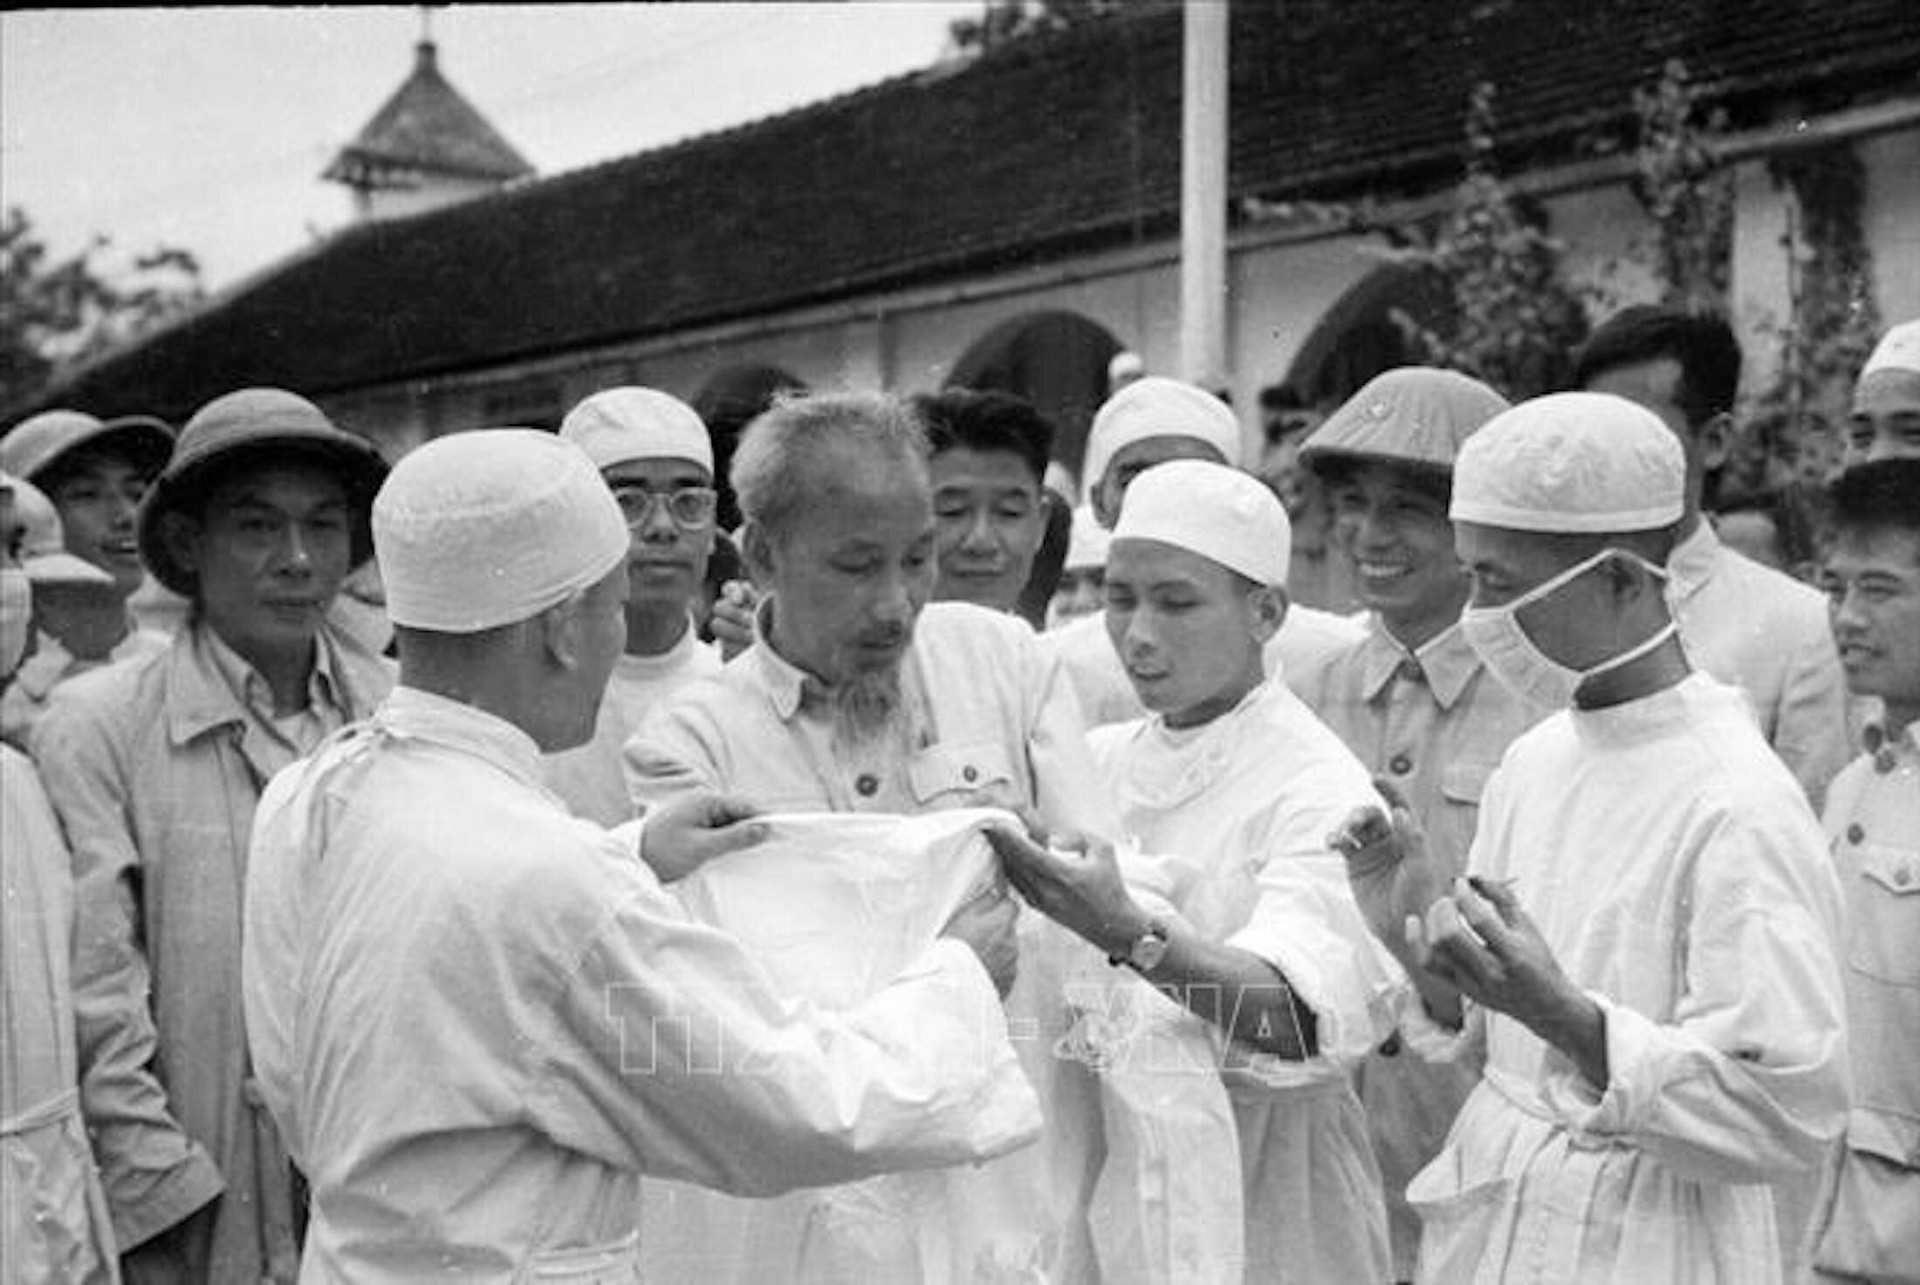 Cách đây 69 năm, ngày 27/2/1955, Chủ tịch Hồ Chí Minh đã viết thư gửi Hội nghị cán bộ y tế và ngày 27/2 trở thành Ngày Thầy thuốc Việt Nam. 69 năm qua, ngành y tế Việt Nam không chỉ nỗ lực hoàn thành nhiệm vụ bảo vệ sức khỏe của nhân dân mà còn có đóng góp ngày càng tích cực vào sự phát triển của y học thế giới. (Ảnh: TTXVN)